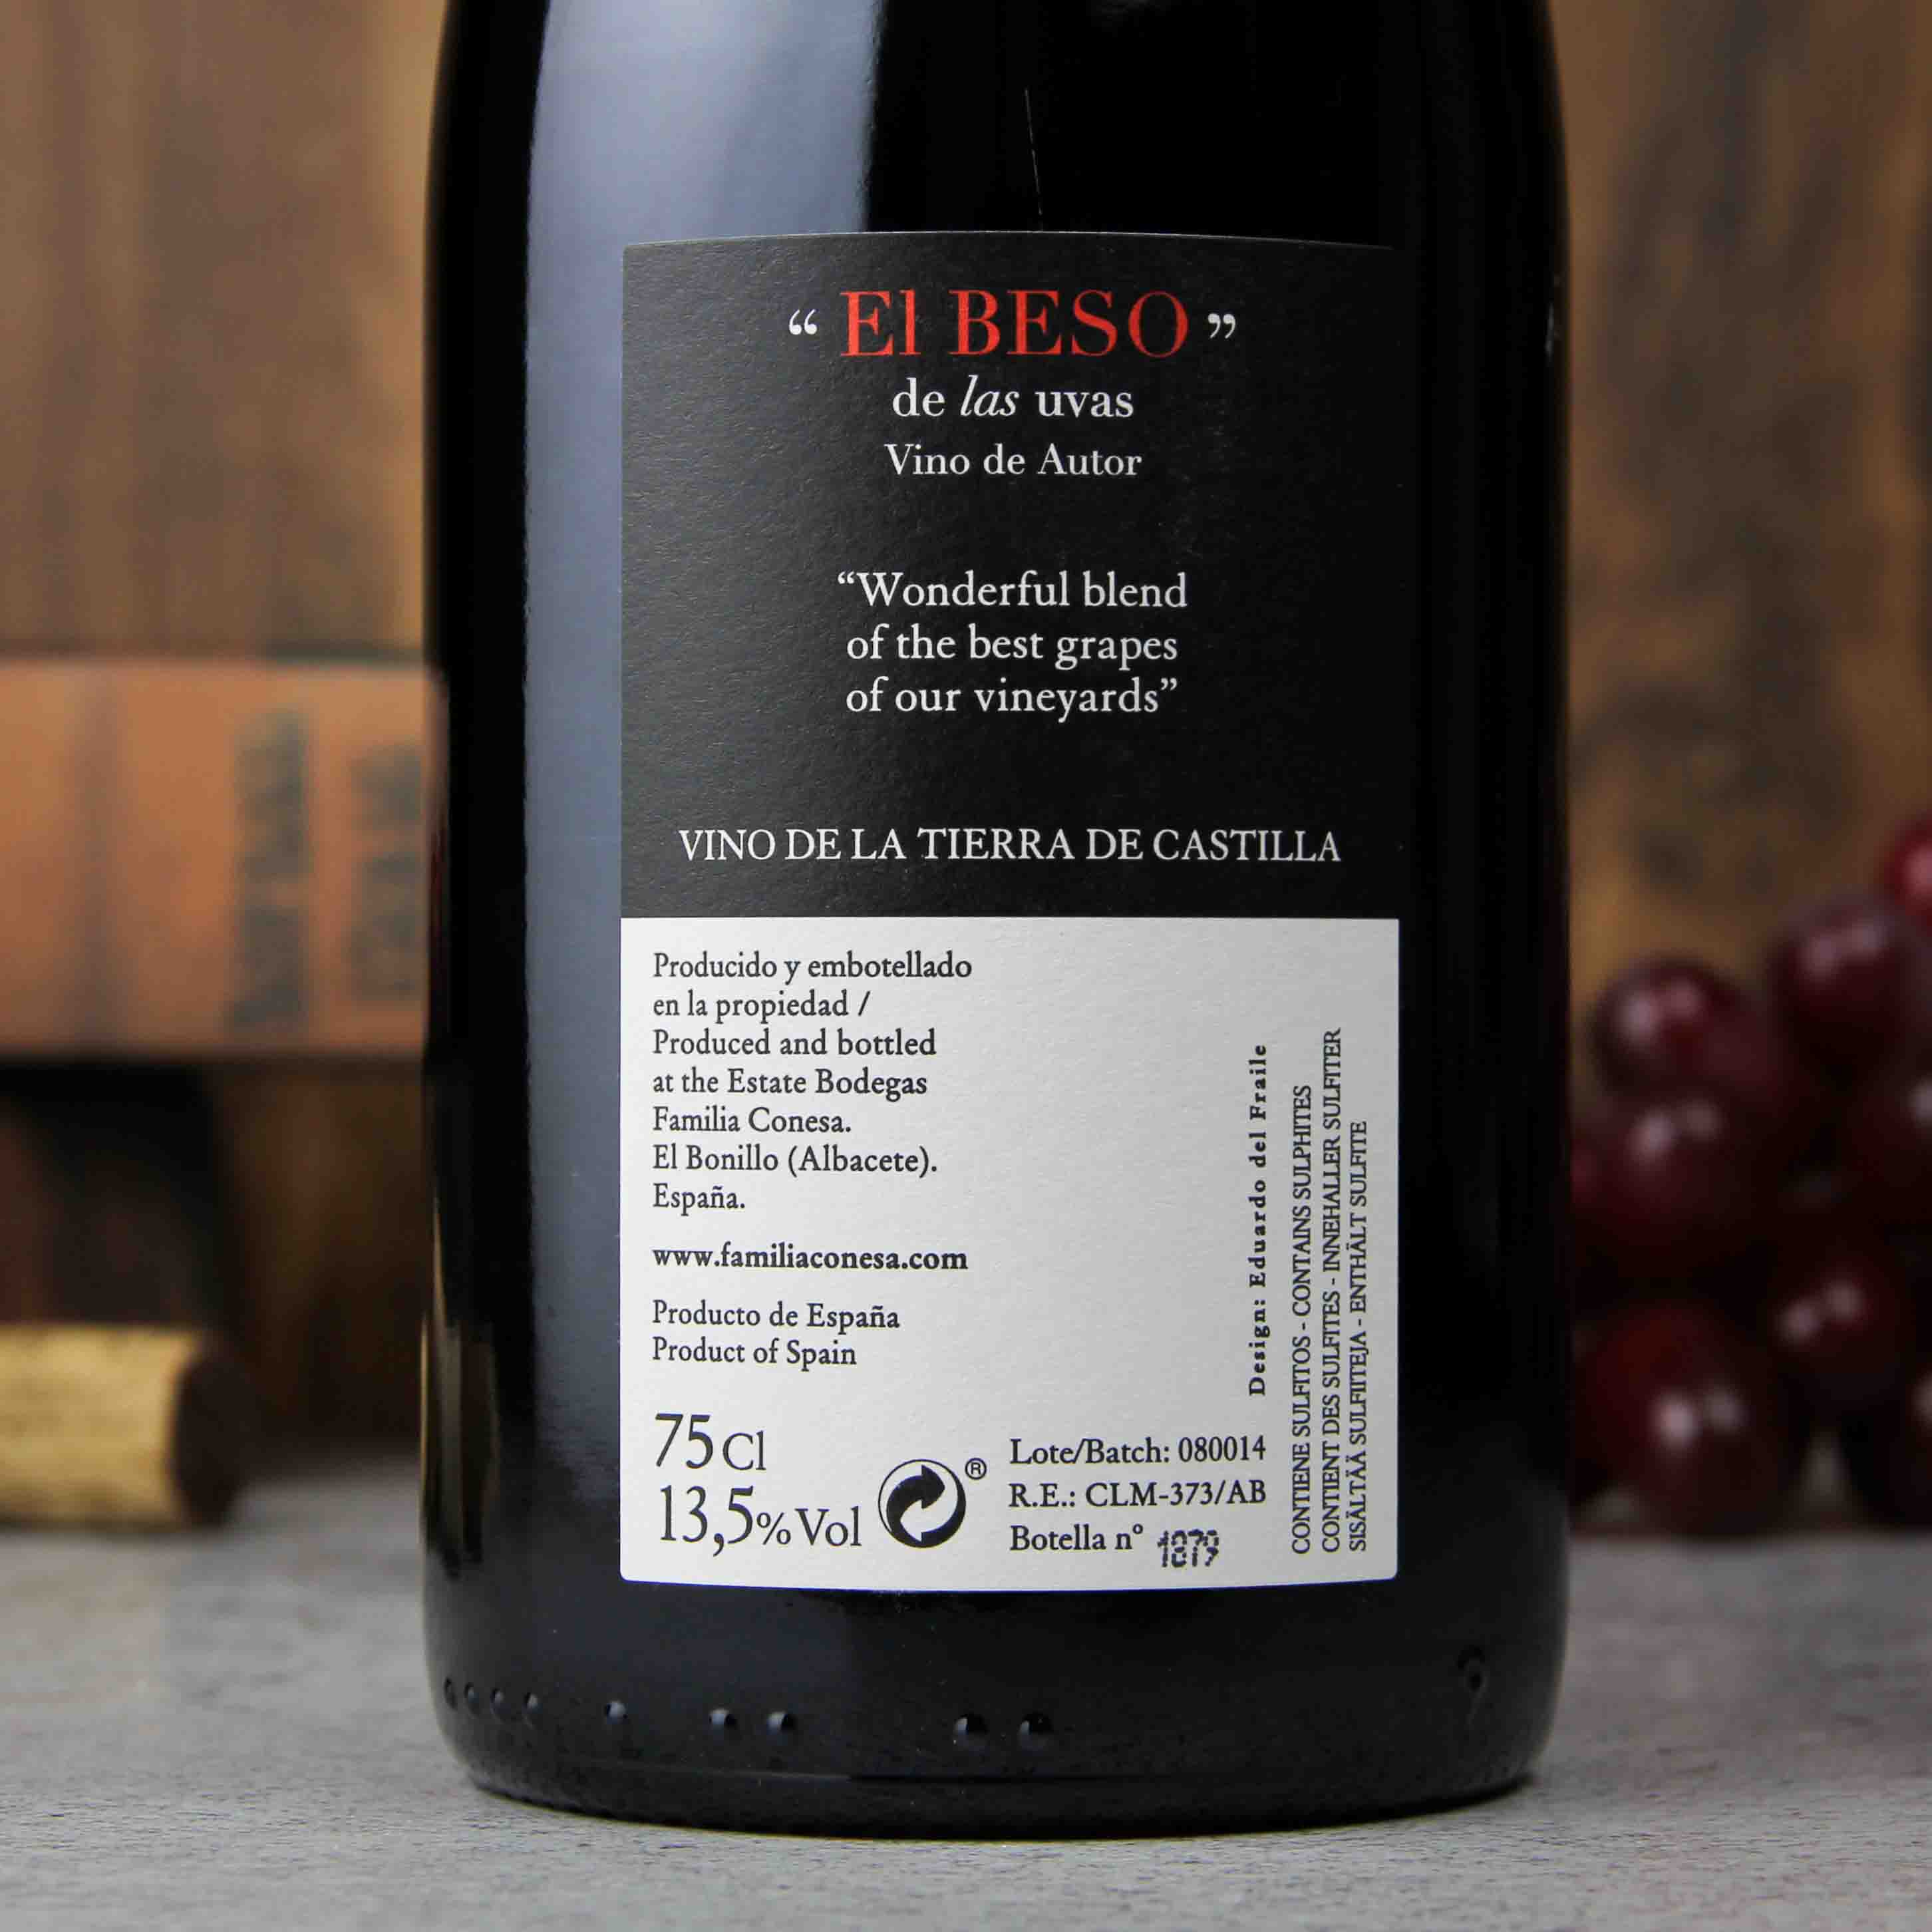 西班牙赫石单一园产区贝索作品混酿干红葡萄酒红酒